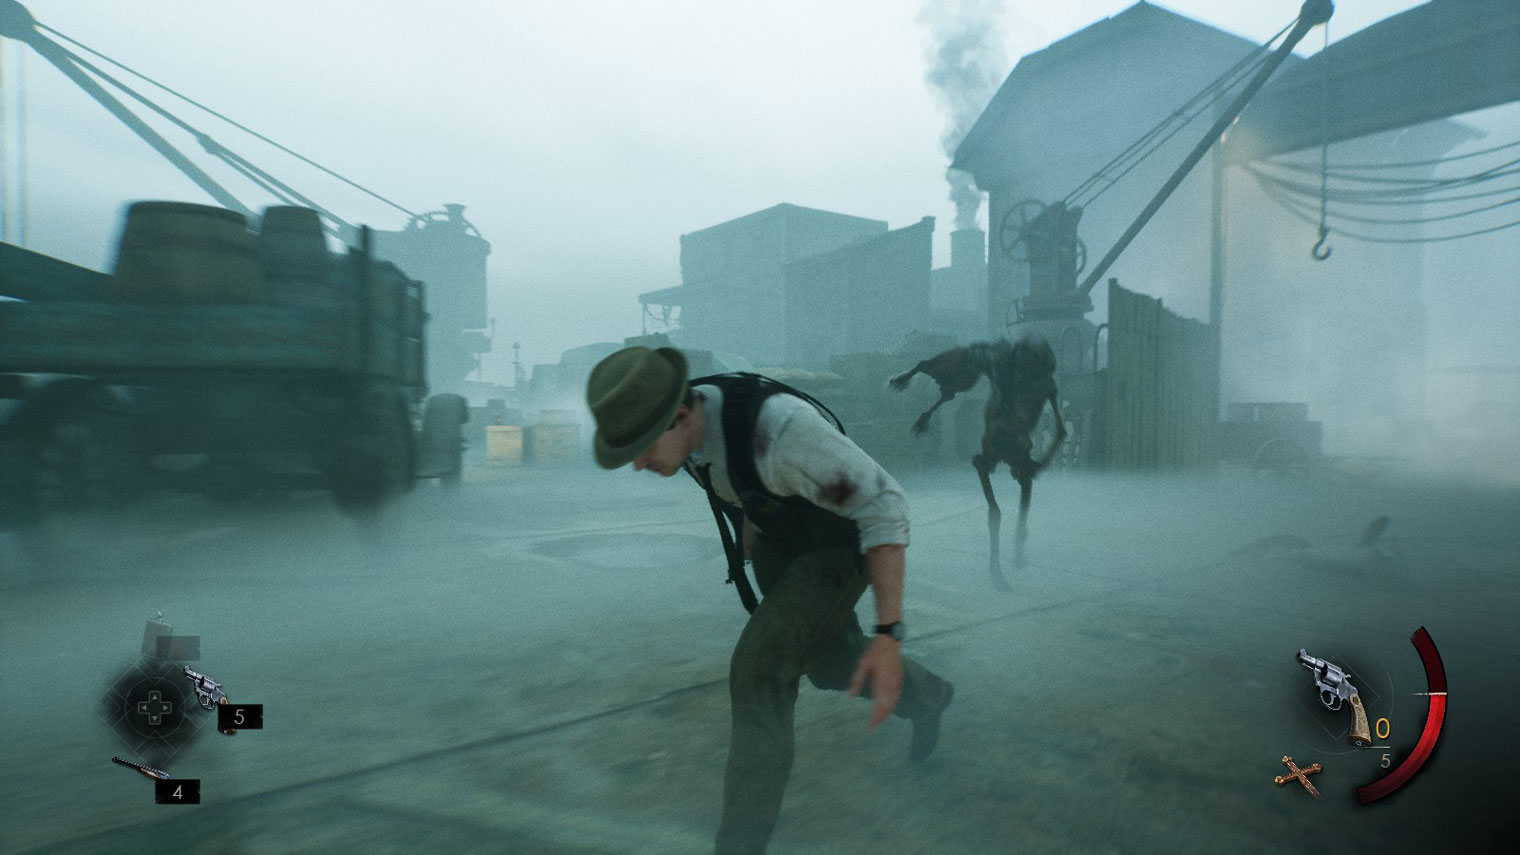 Временами происходящее уж слишком напоминает Silent Hill: наползает туман, нападают чудовища с искаженными пропорциями. Кадр: THQ Nordic